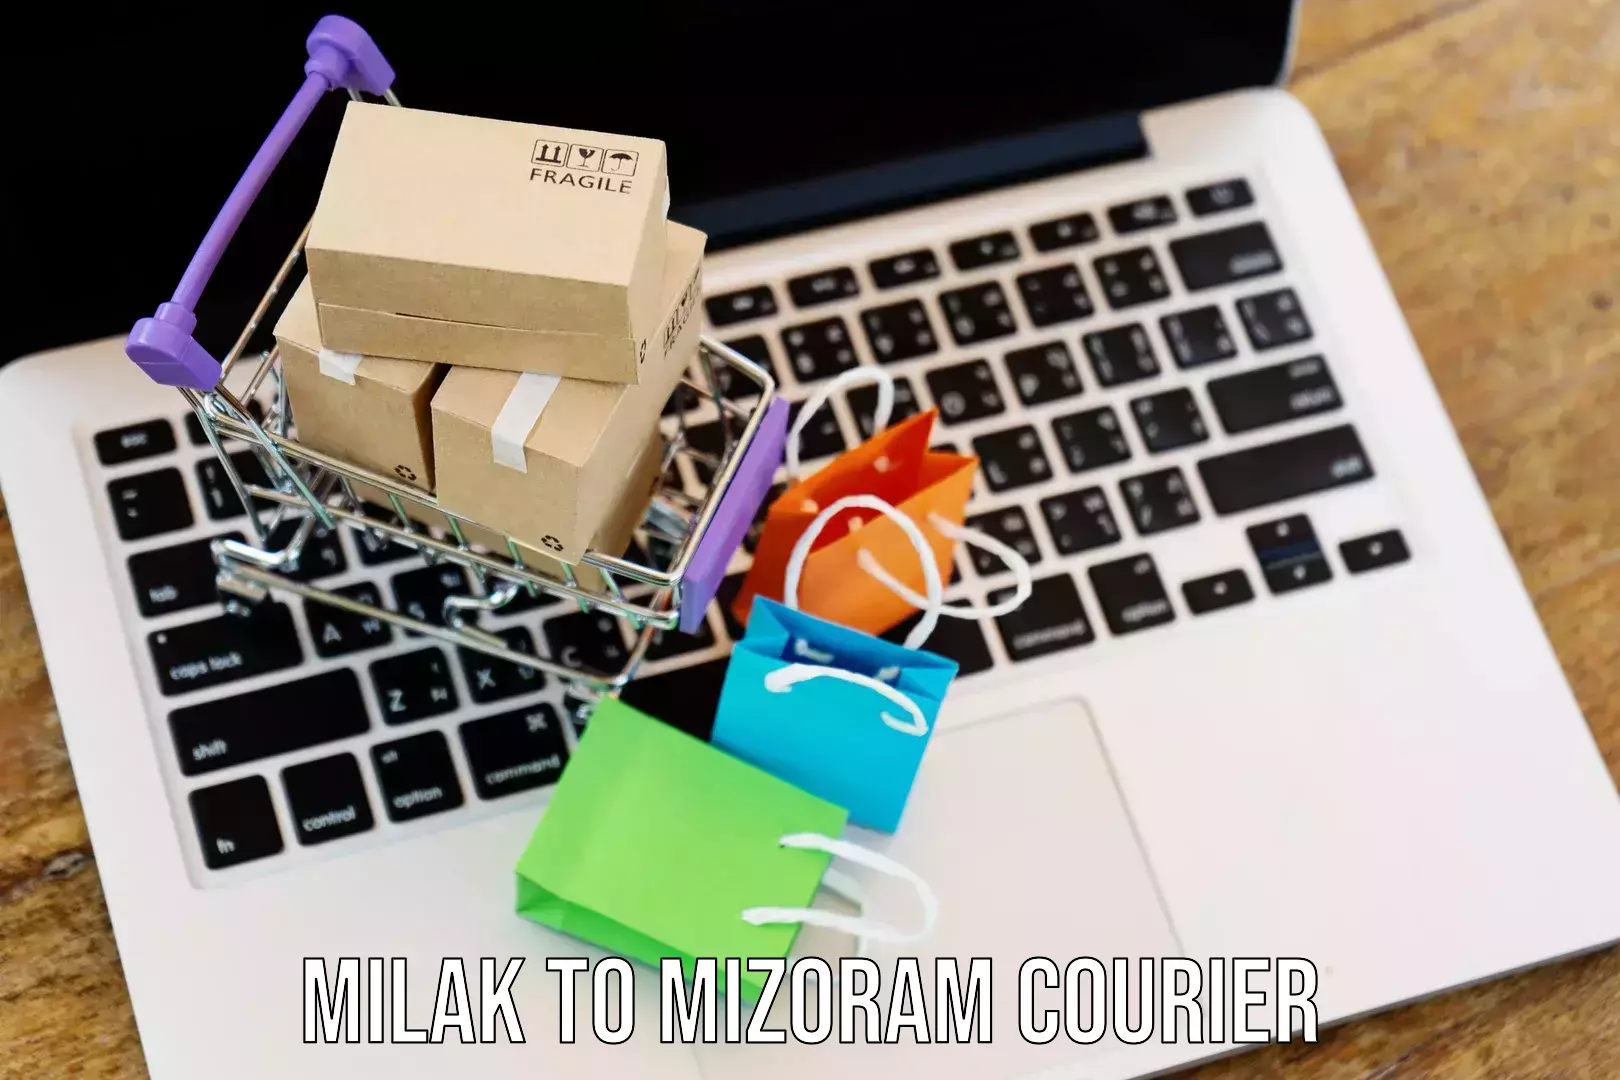 Premium courier services Milak to Mizoram